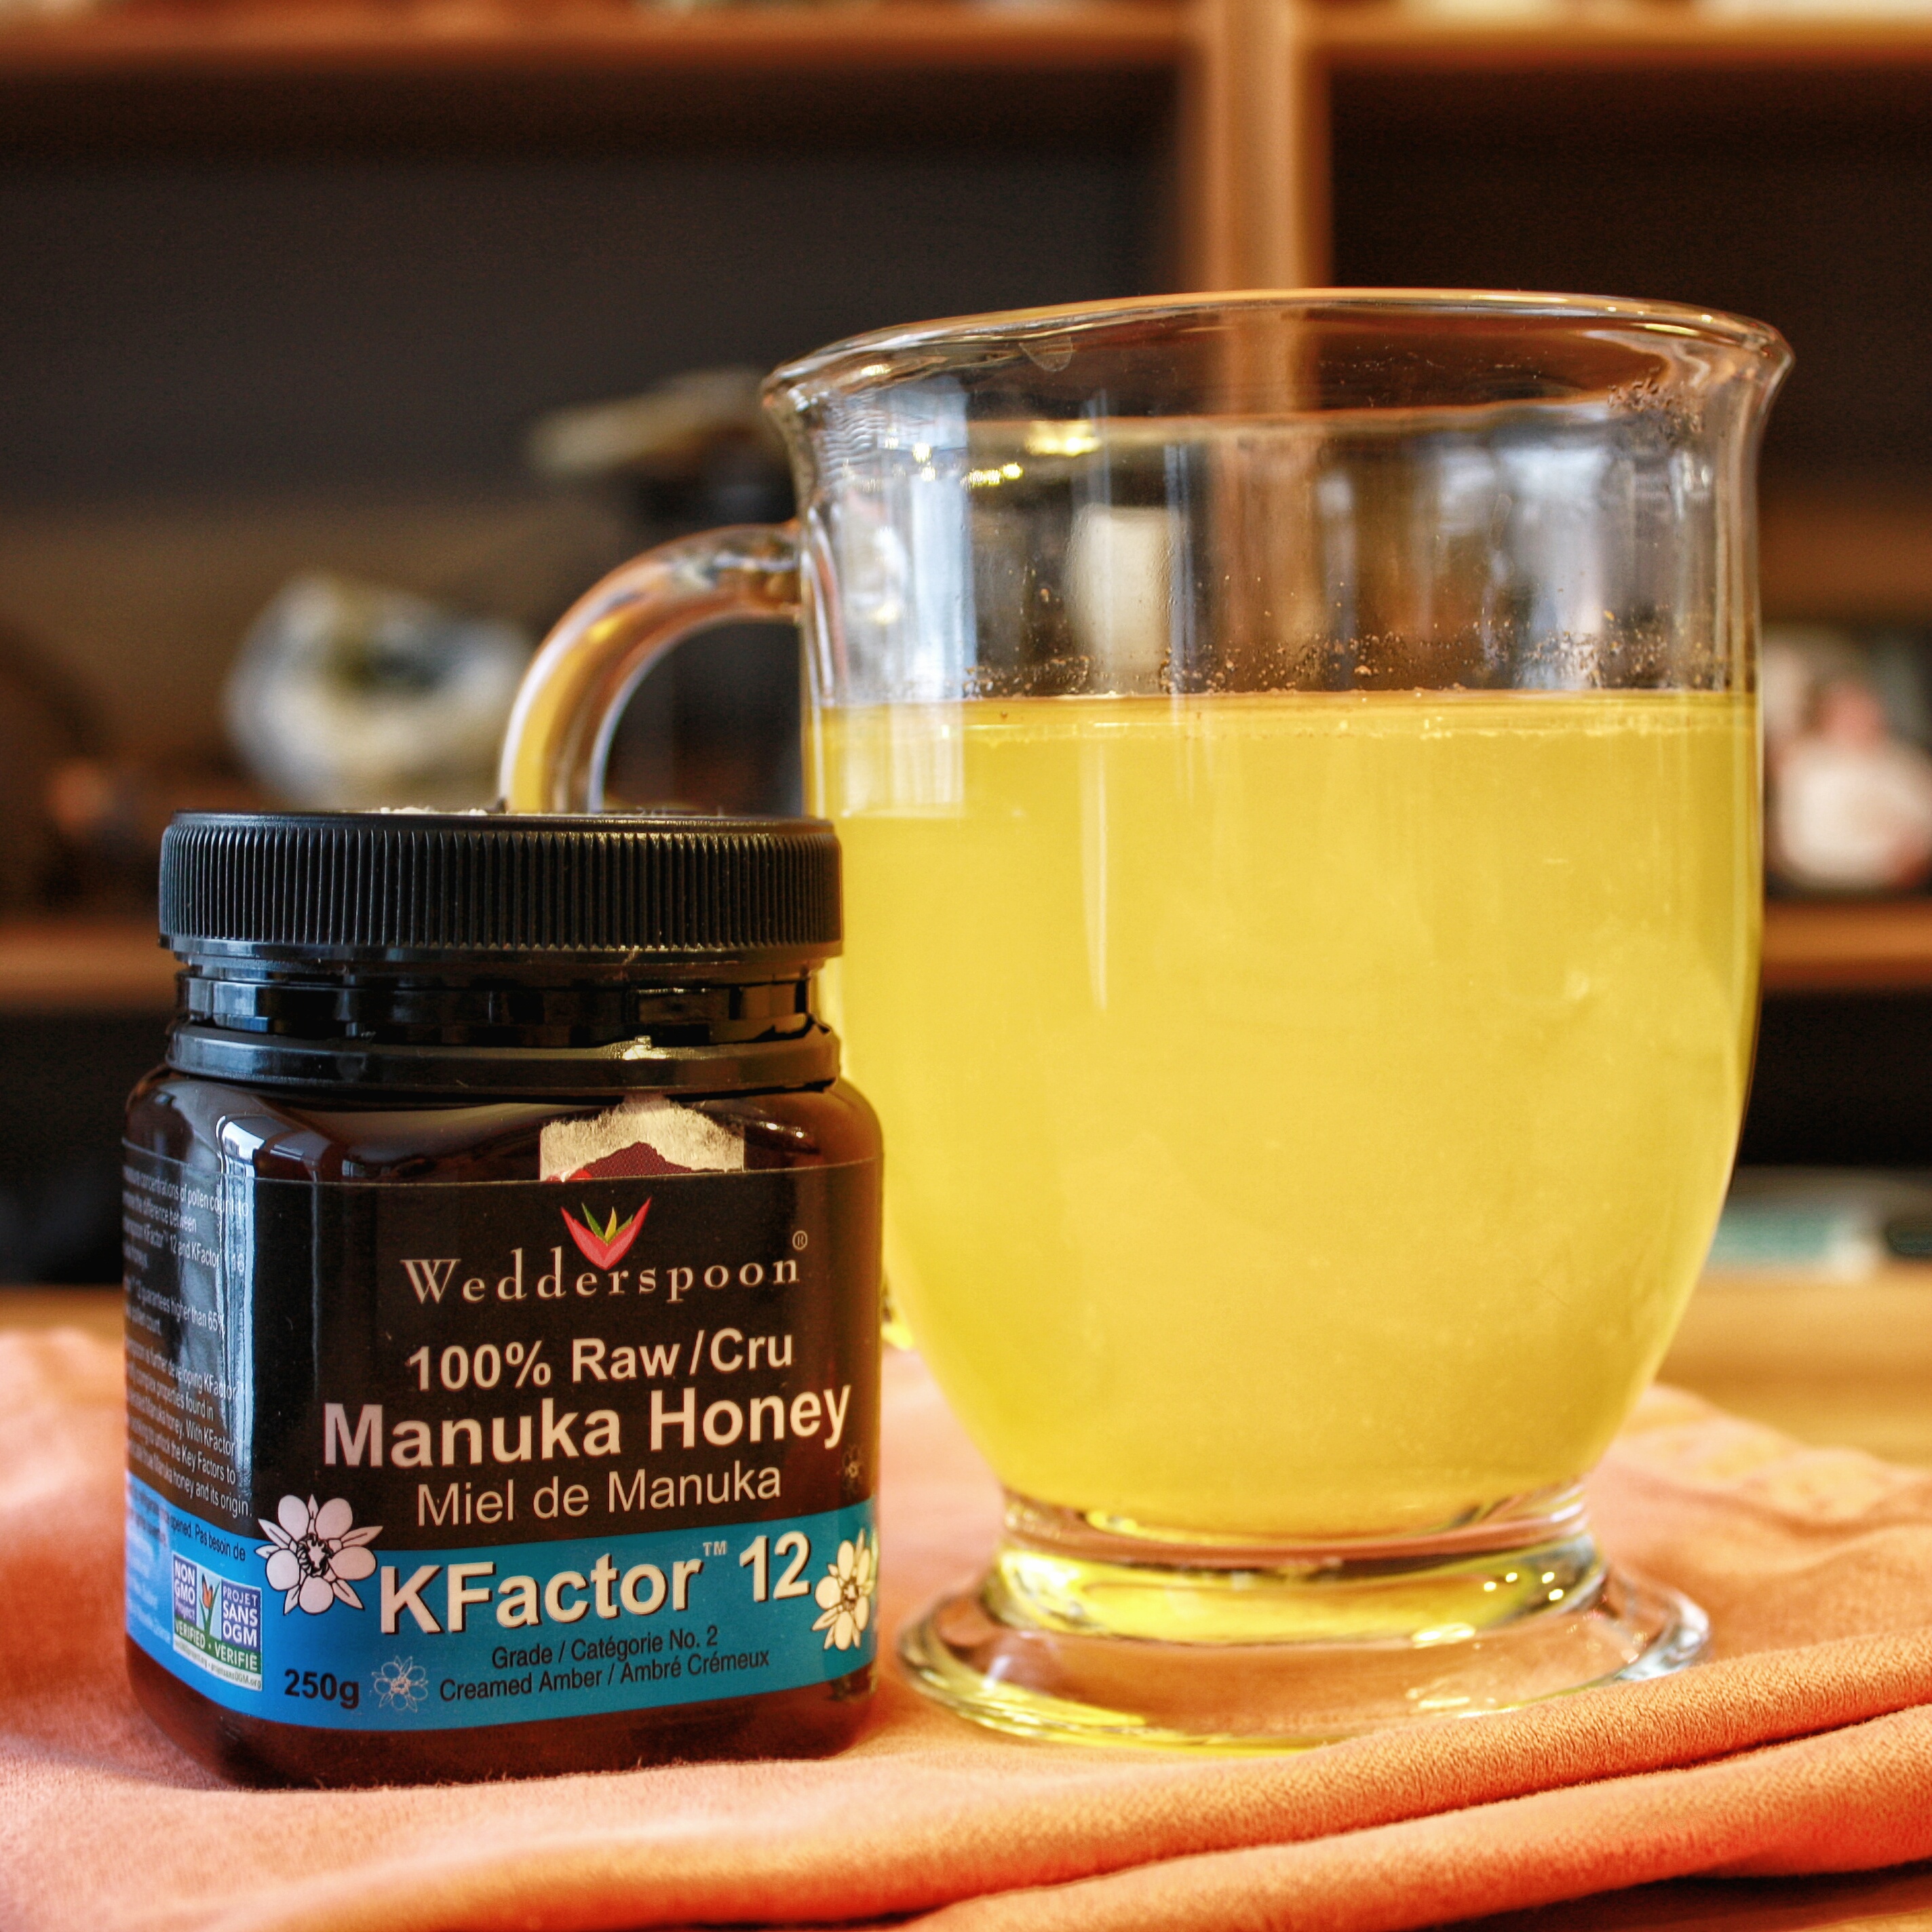 a hot mug of immunity elixir and manuka honey